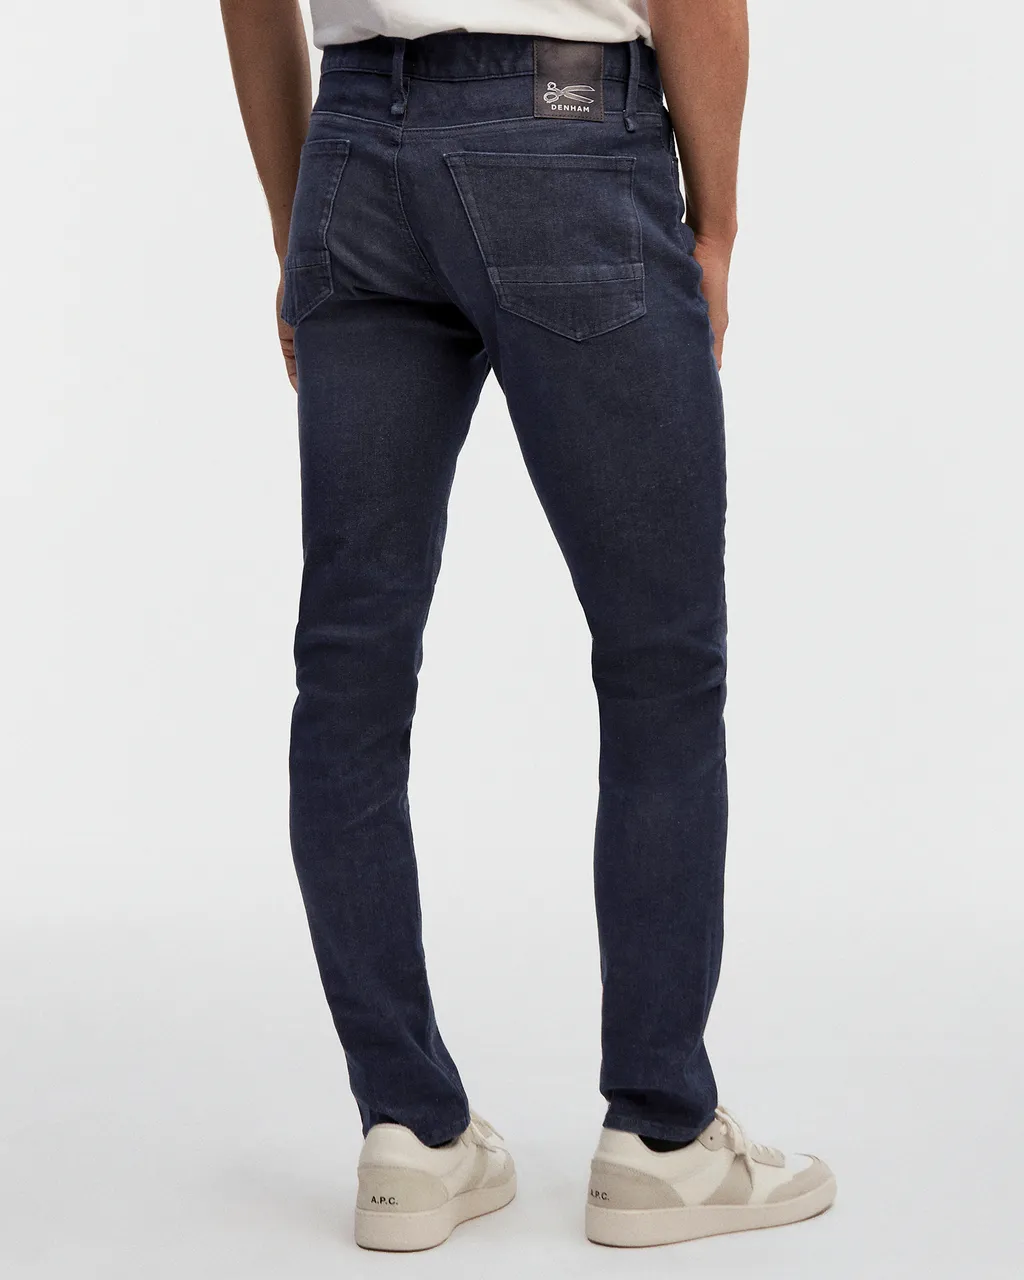 Denham Bolt fmdbbb jeans